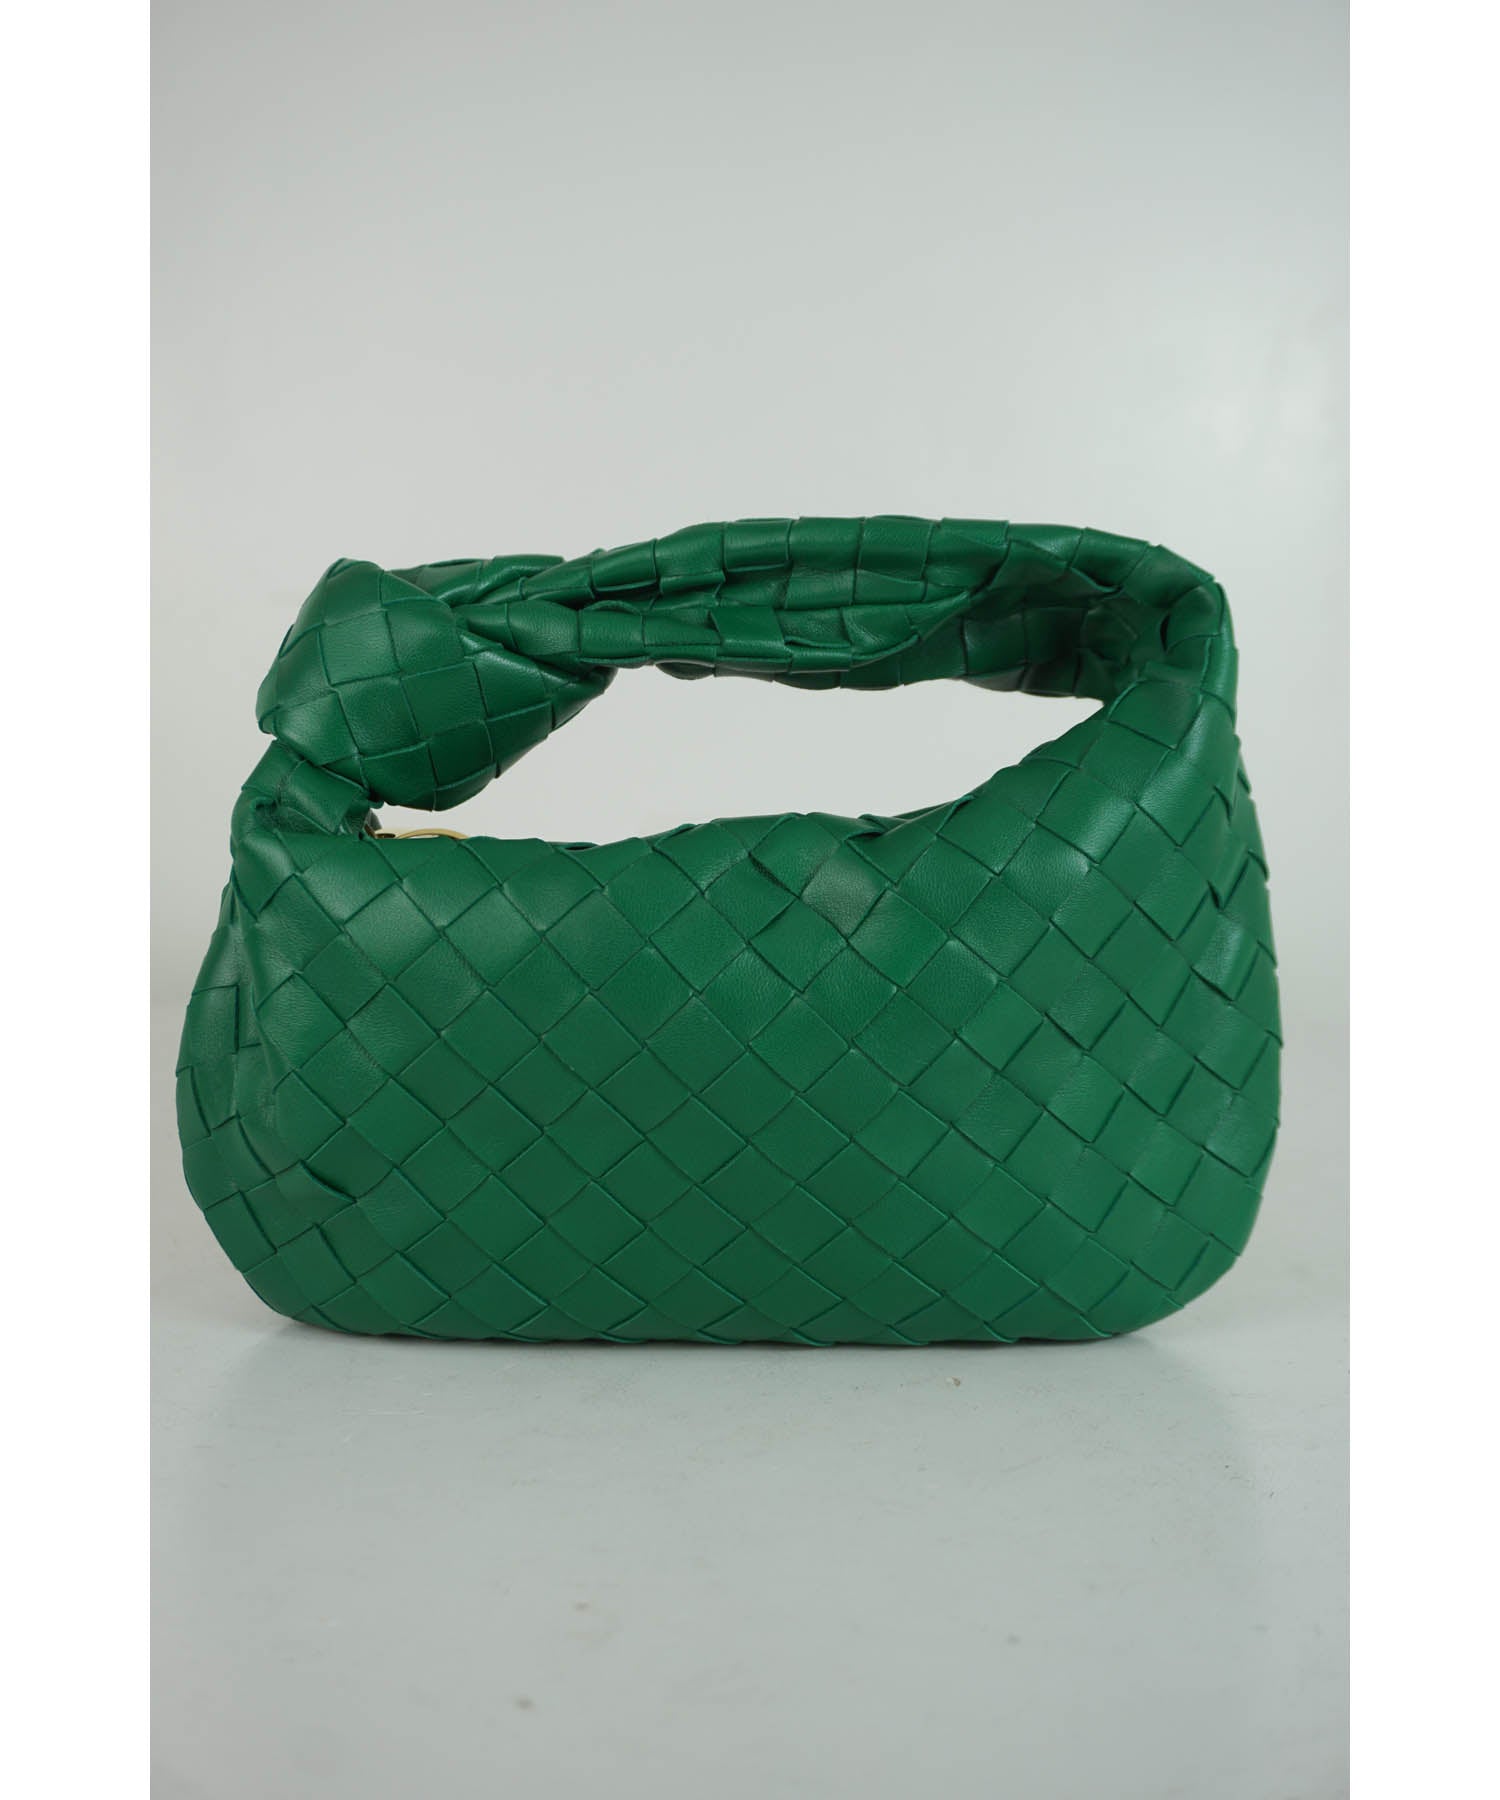 Christian Dior Trotter Wood Handle One Shoulder Bag Handbag With Tassel  Charm